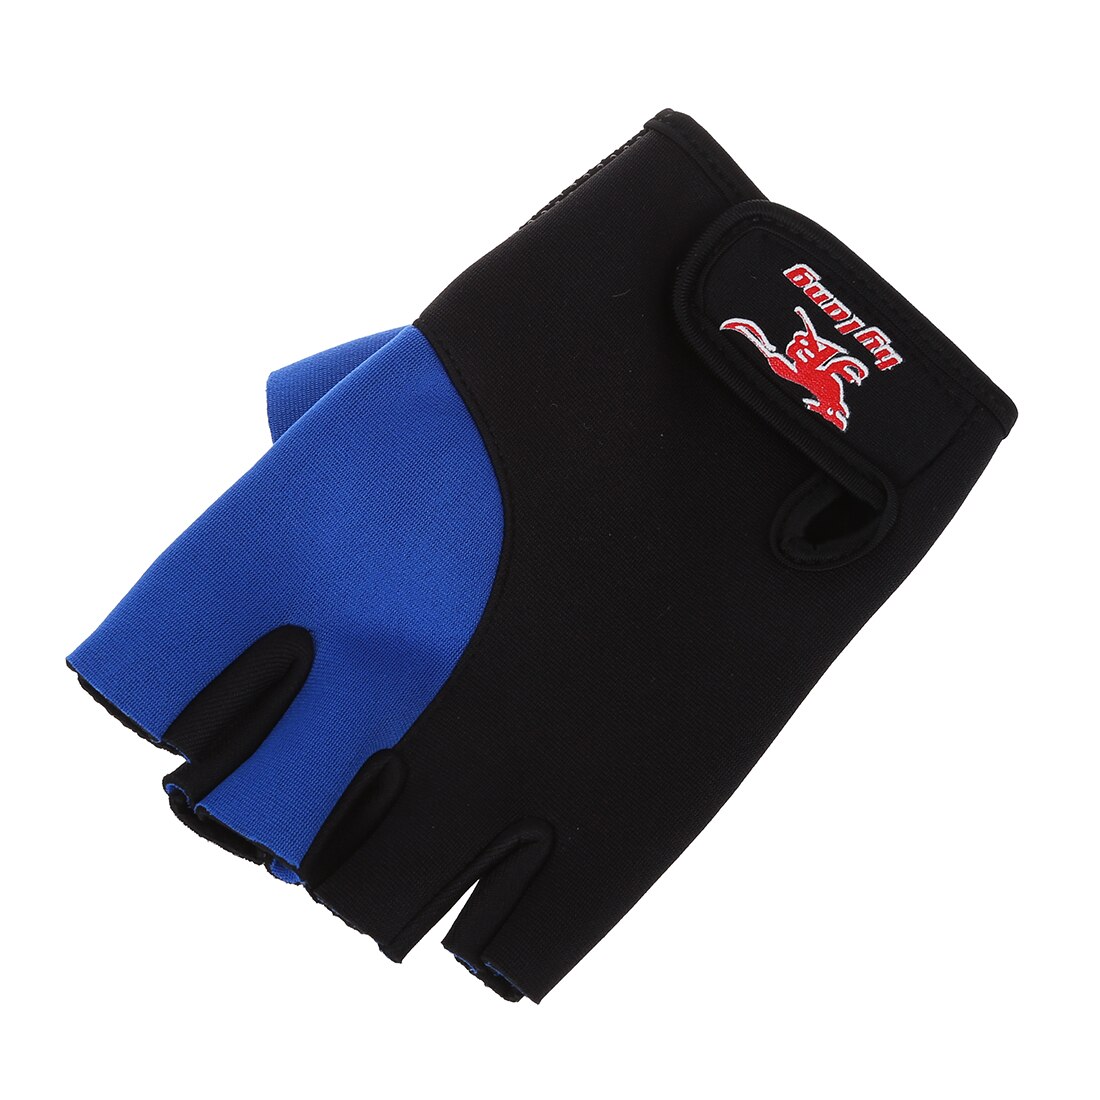 2 Pcs Black Blue Neoprene Fingerless Sports Gloves for Men